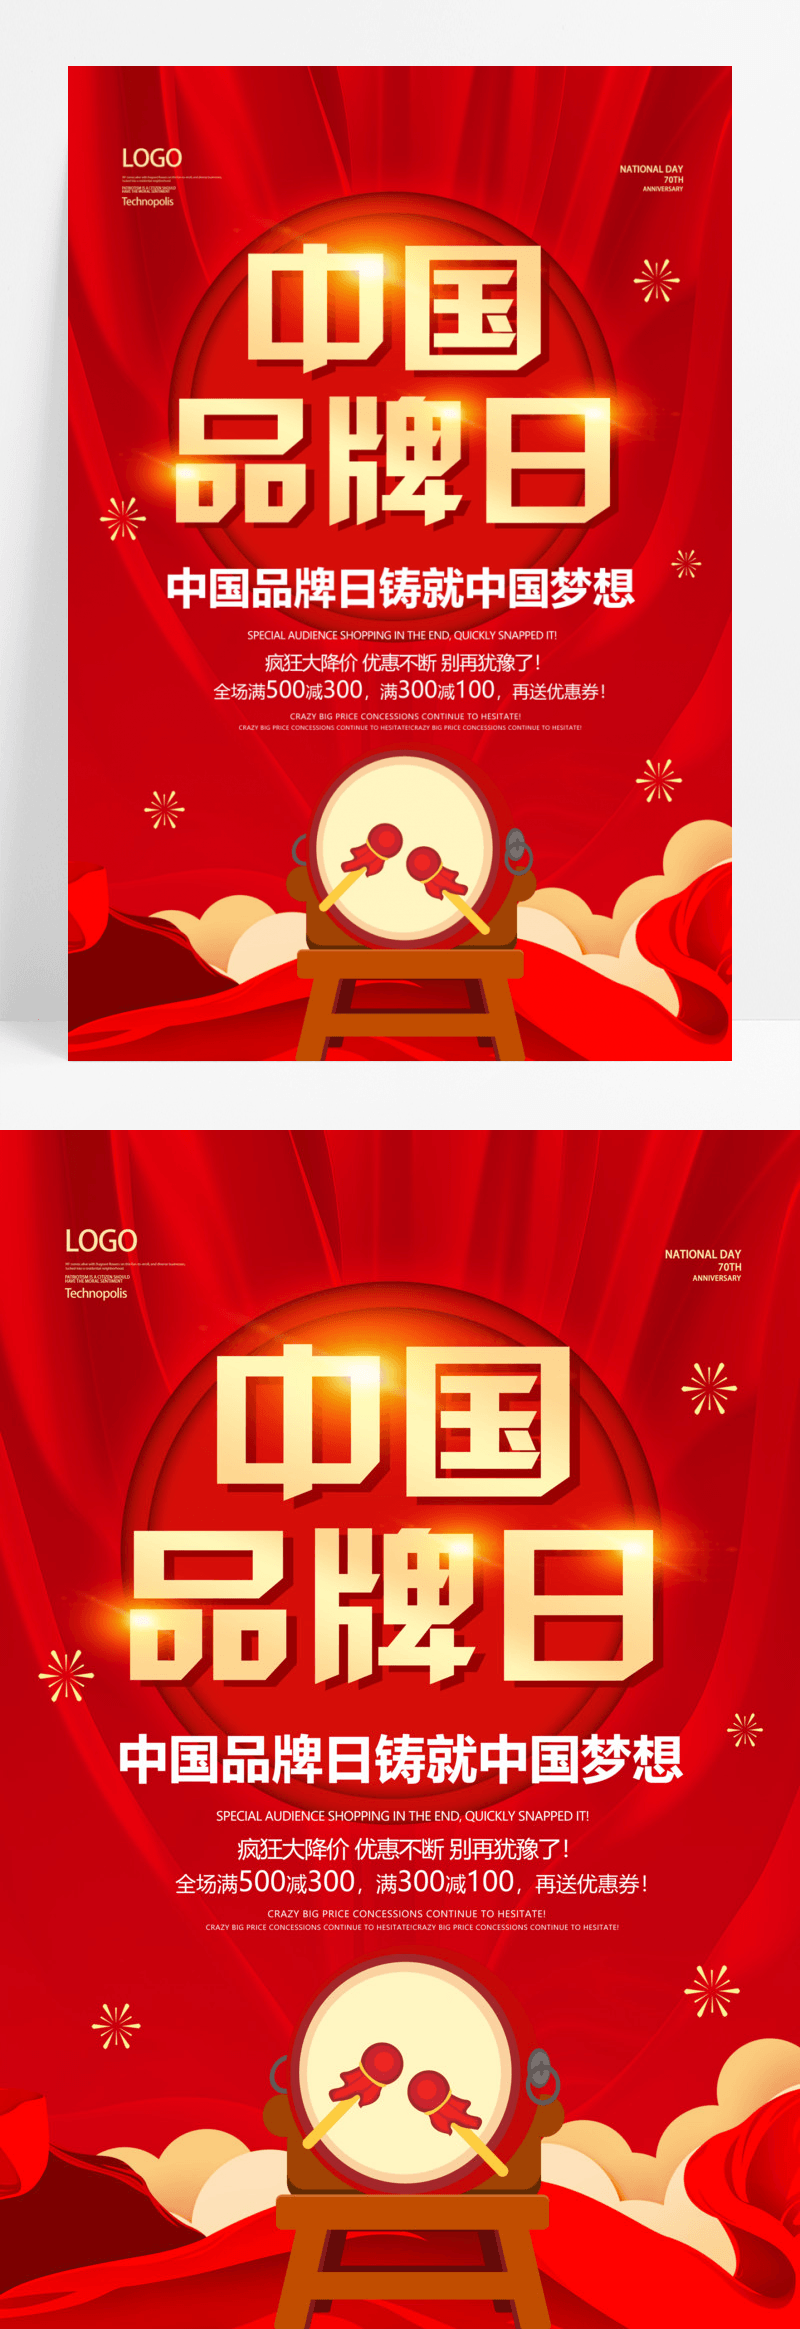 简约大气红色系中国品牌日宣传海报